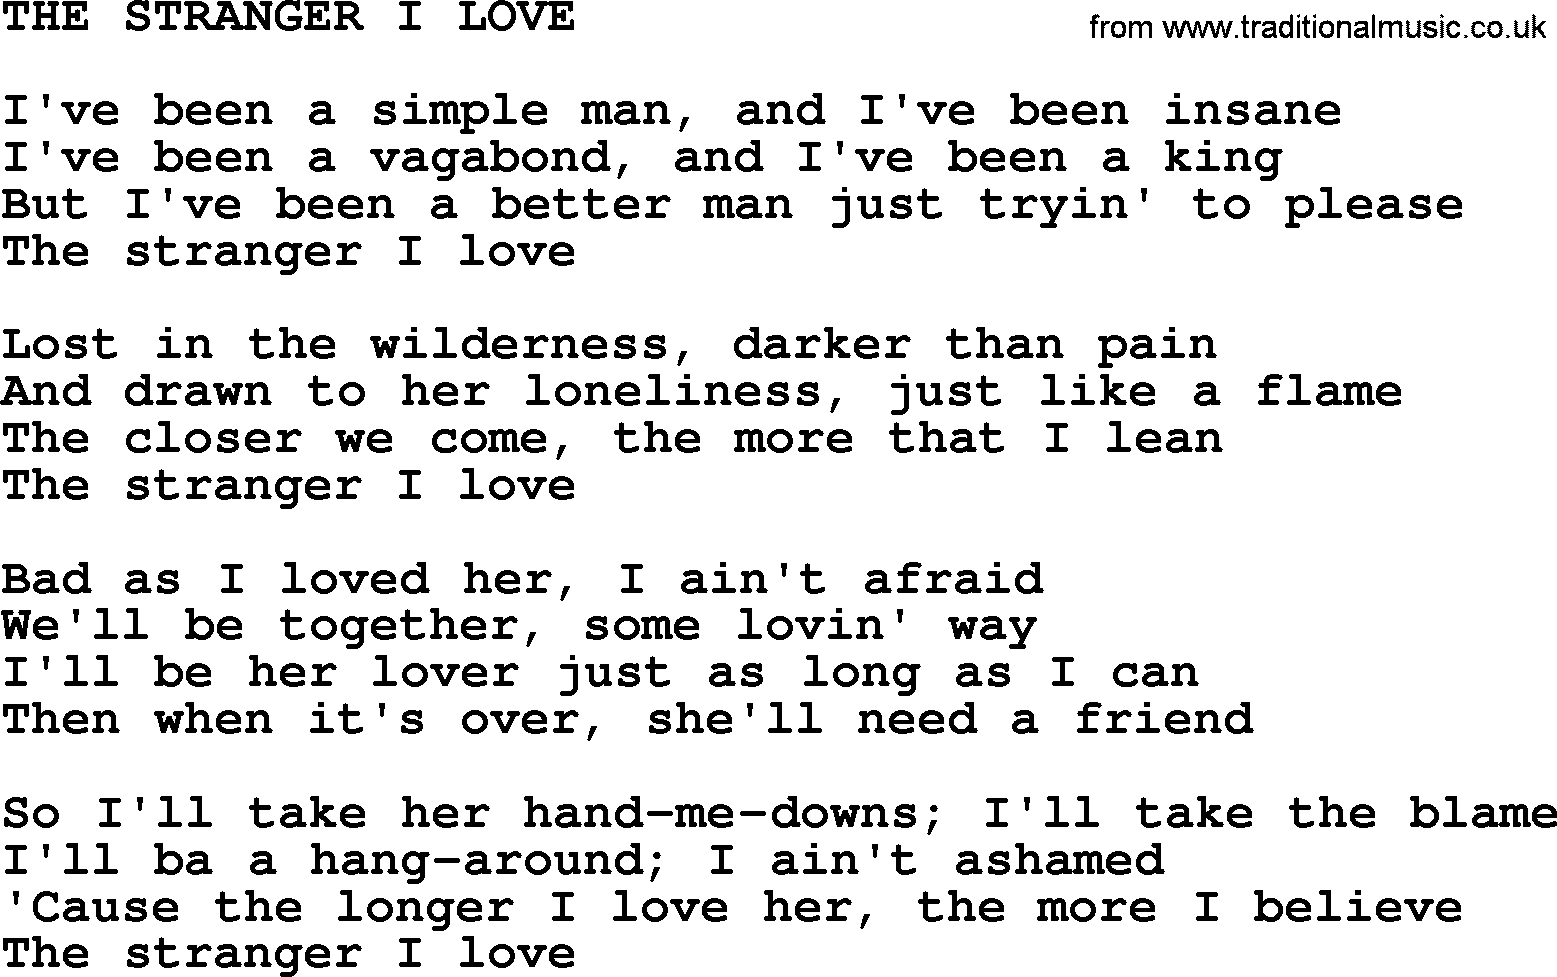 Kris Kristofferson song: The Stranger I Love lyrics